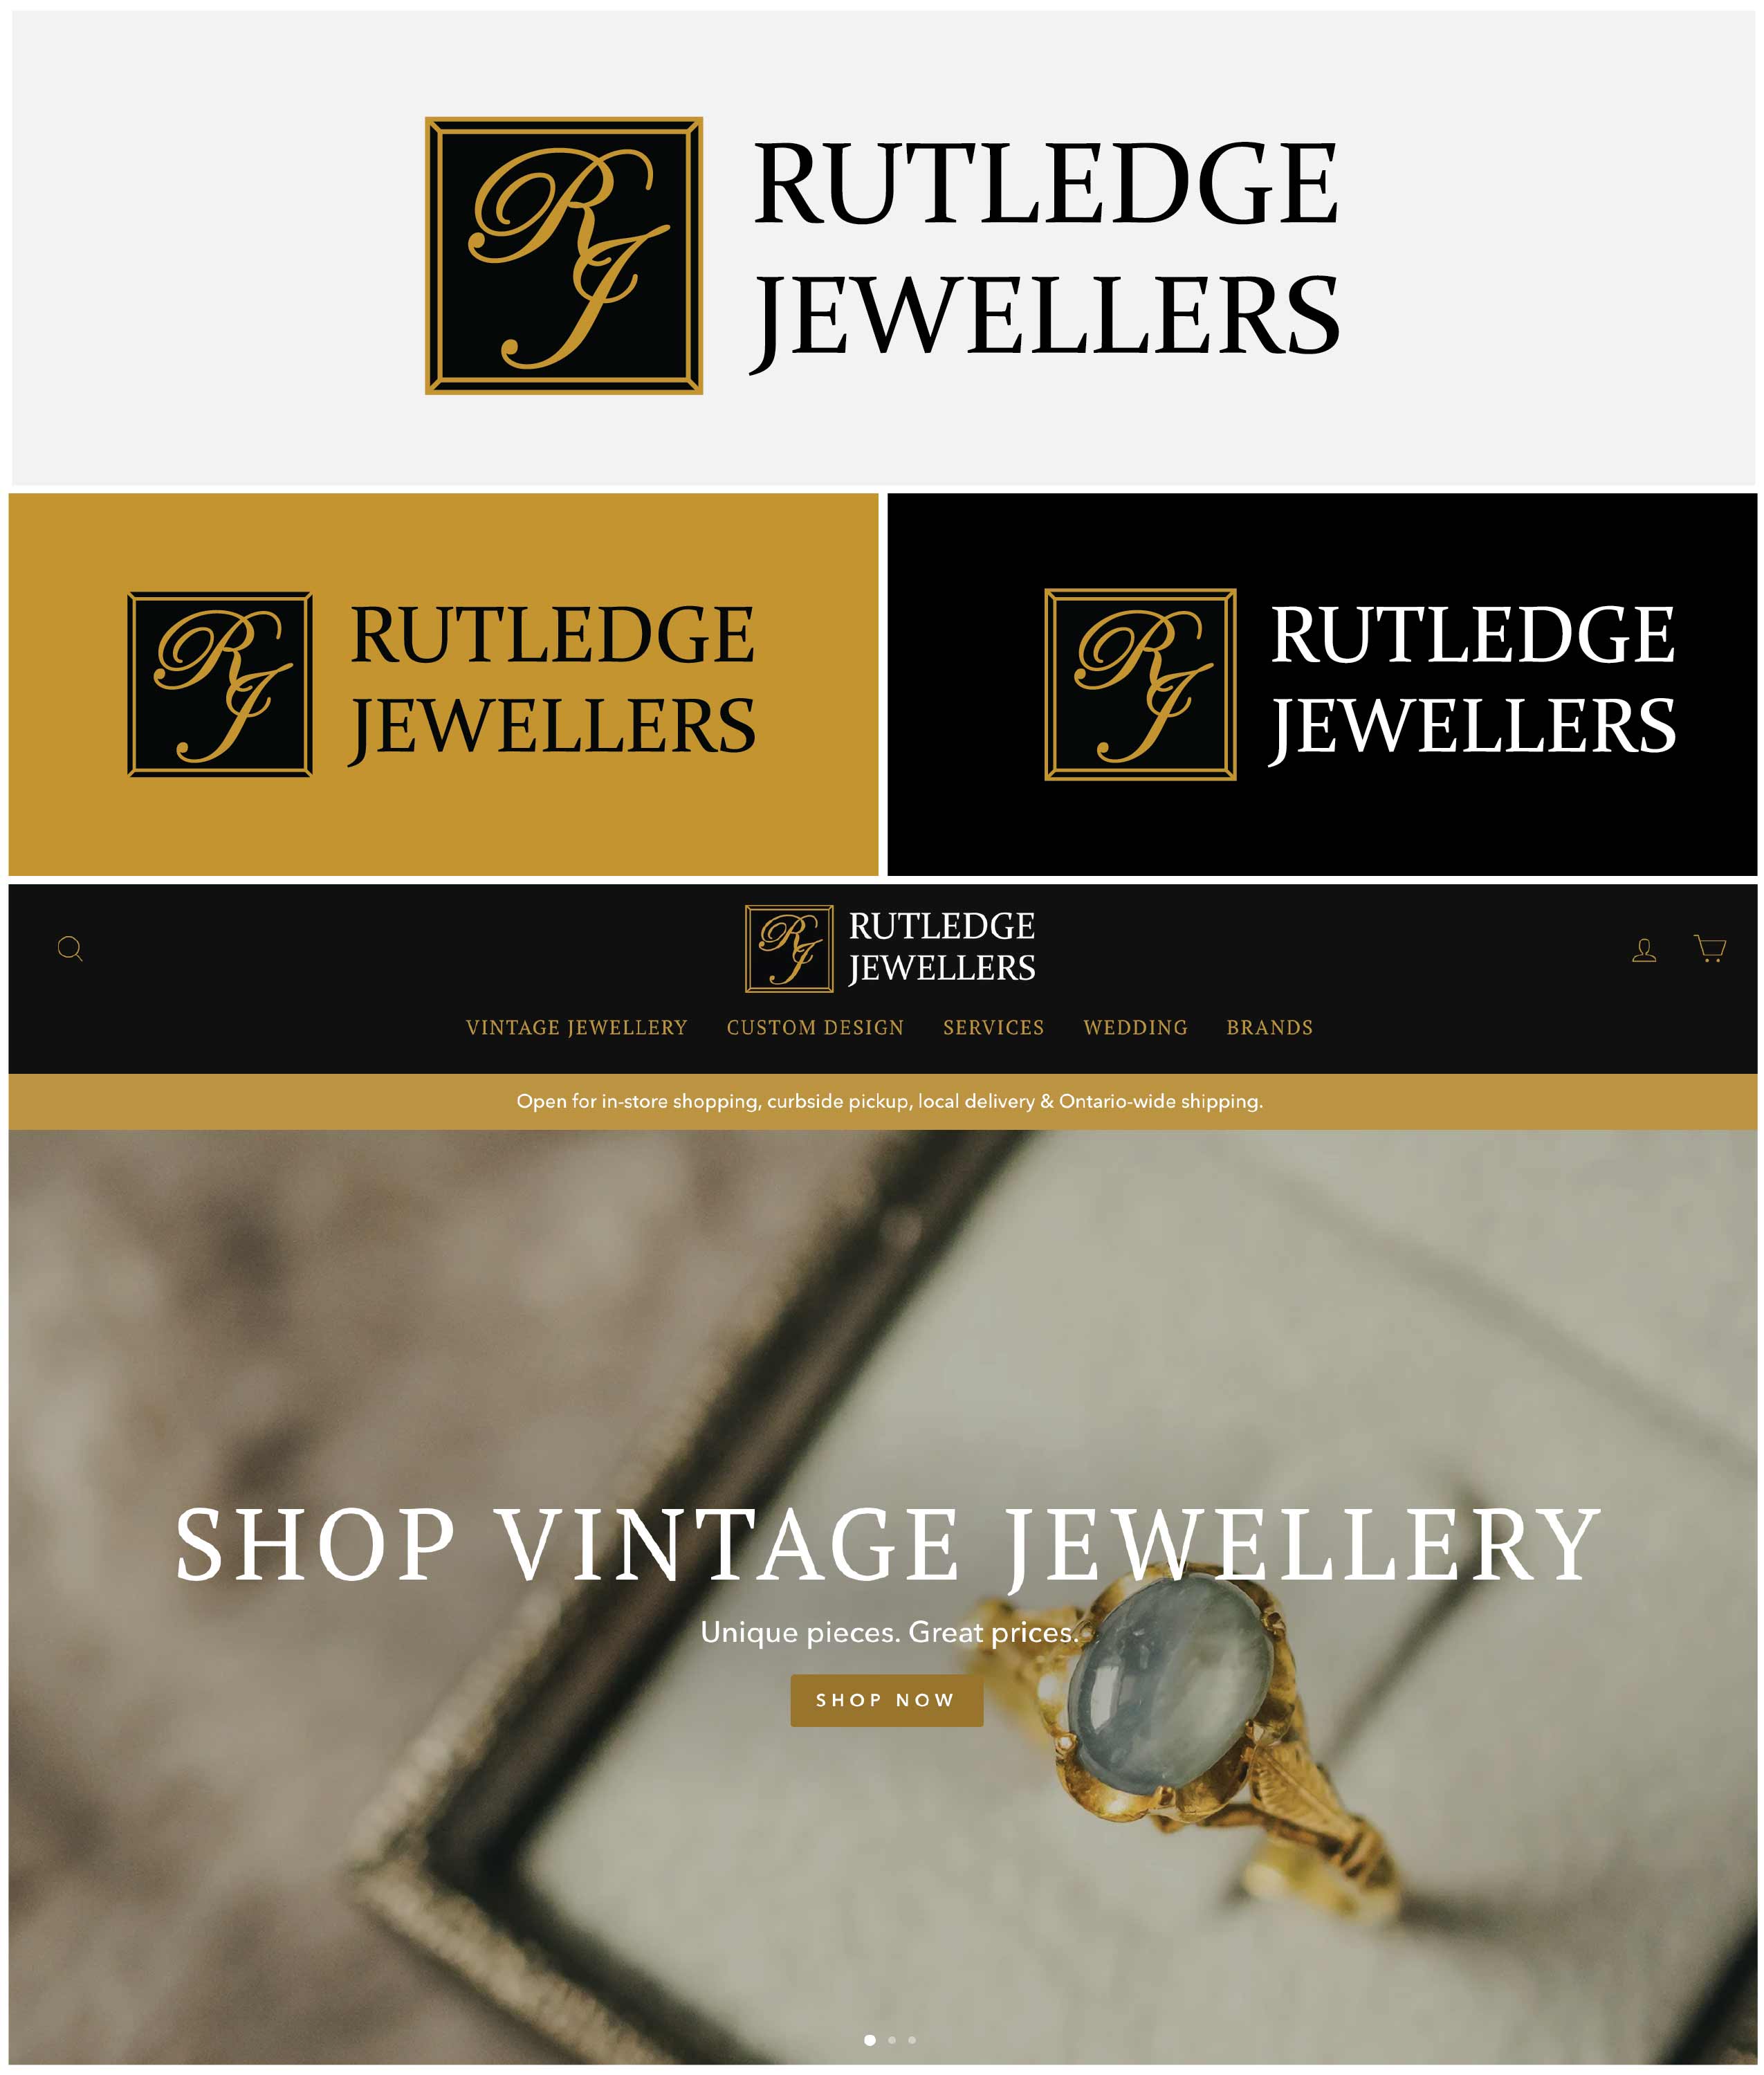 brand-board-rutledge-jewellers-01